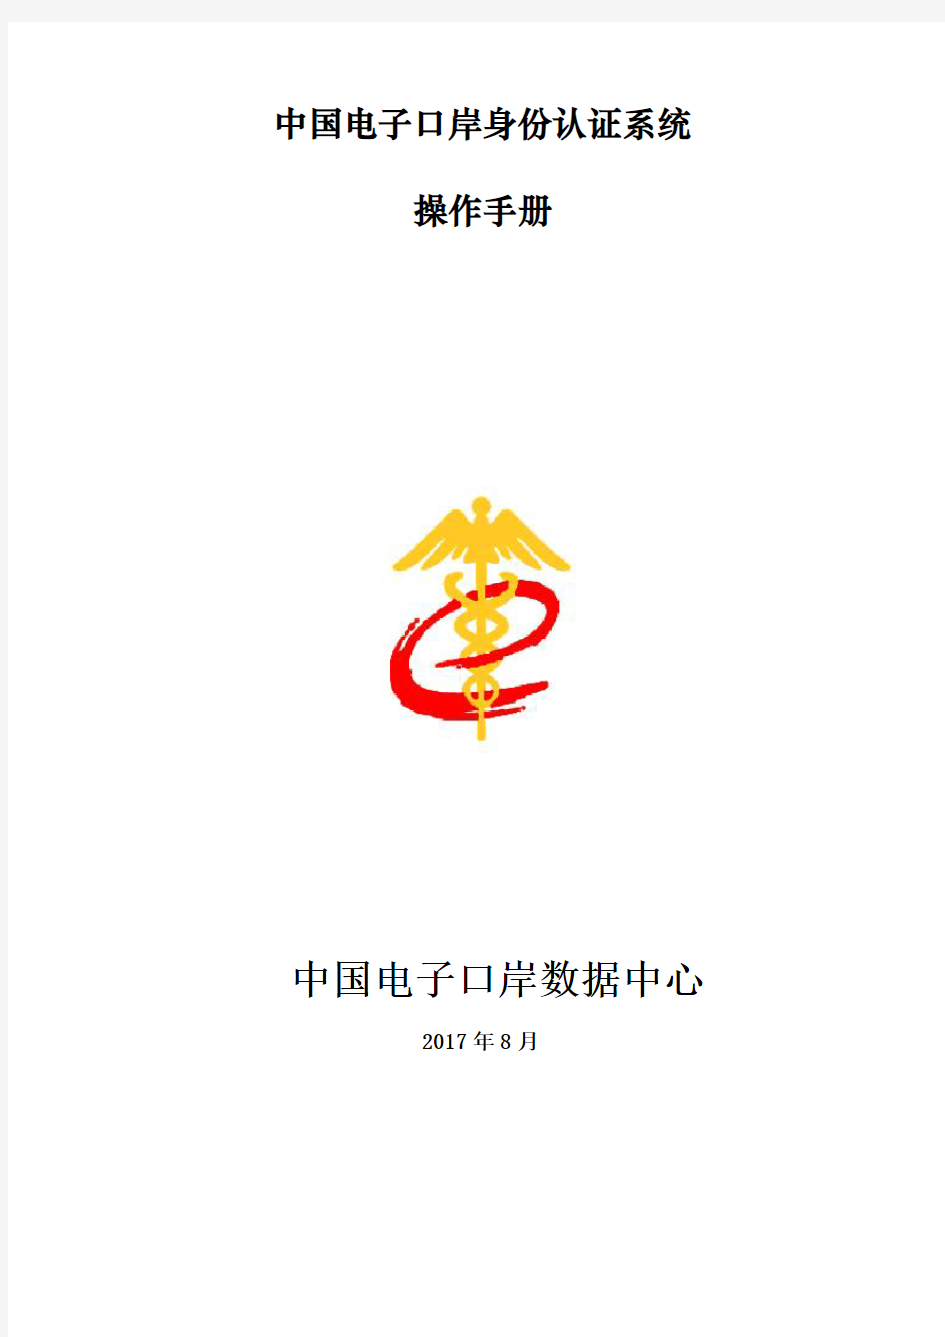 中国电子口岸身份认证系统操作手册(企业法人卡)